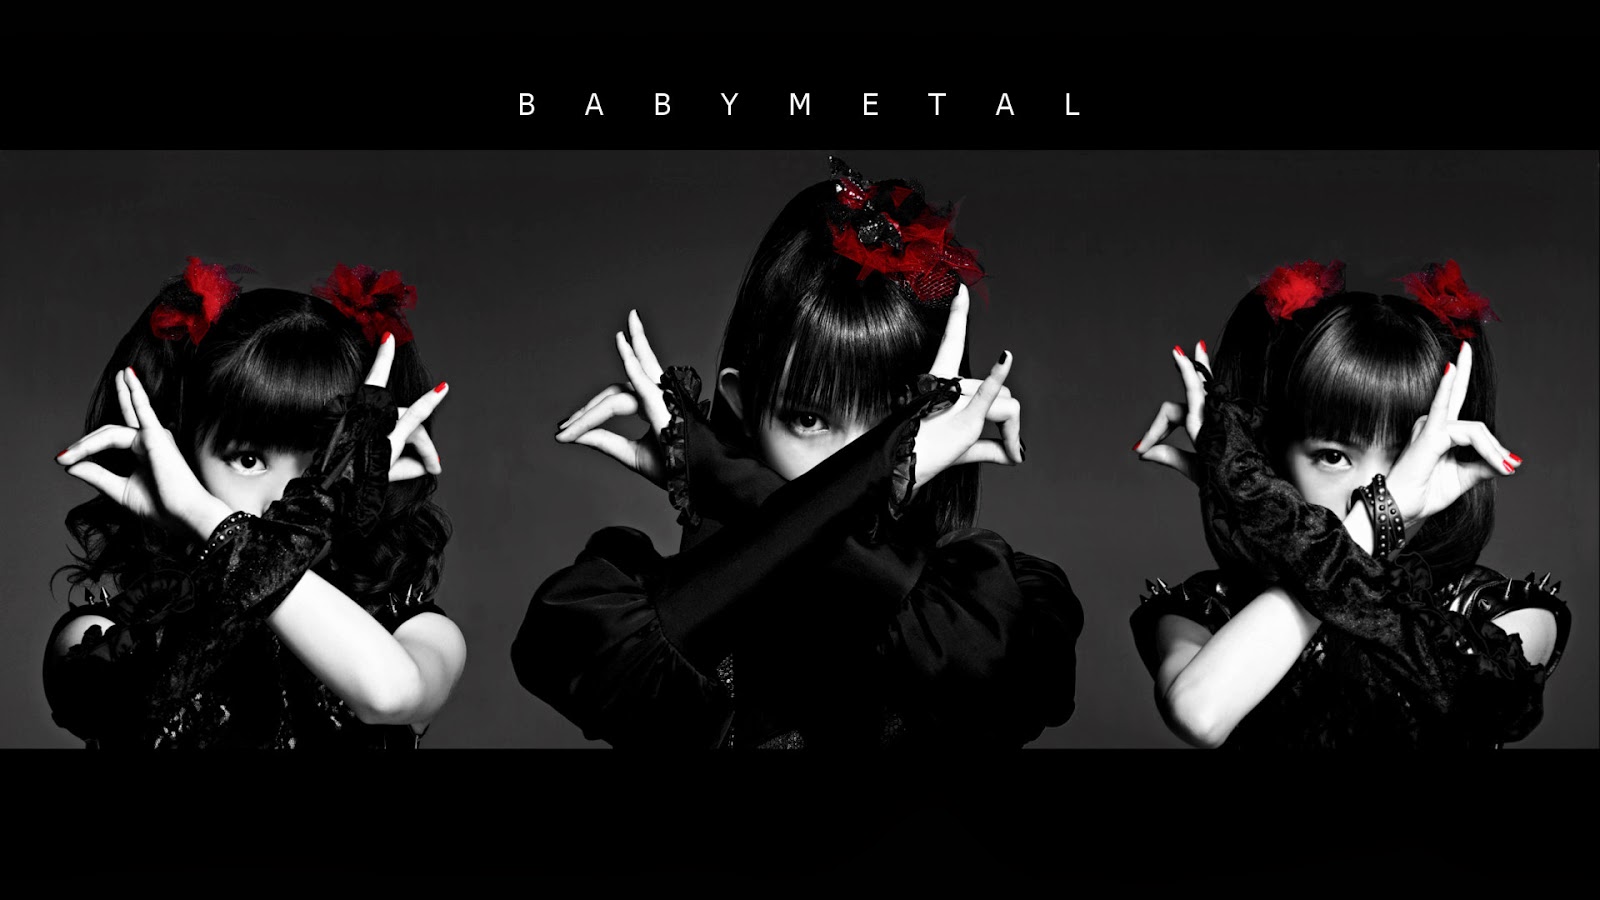 babymetal, music, asian, heavy metal, japanese, metal idol, oriental